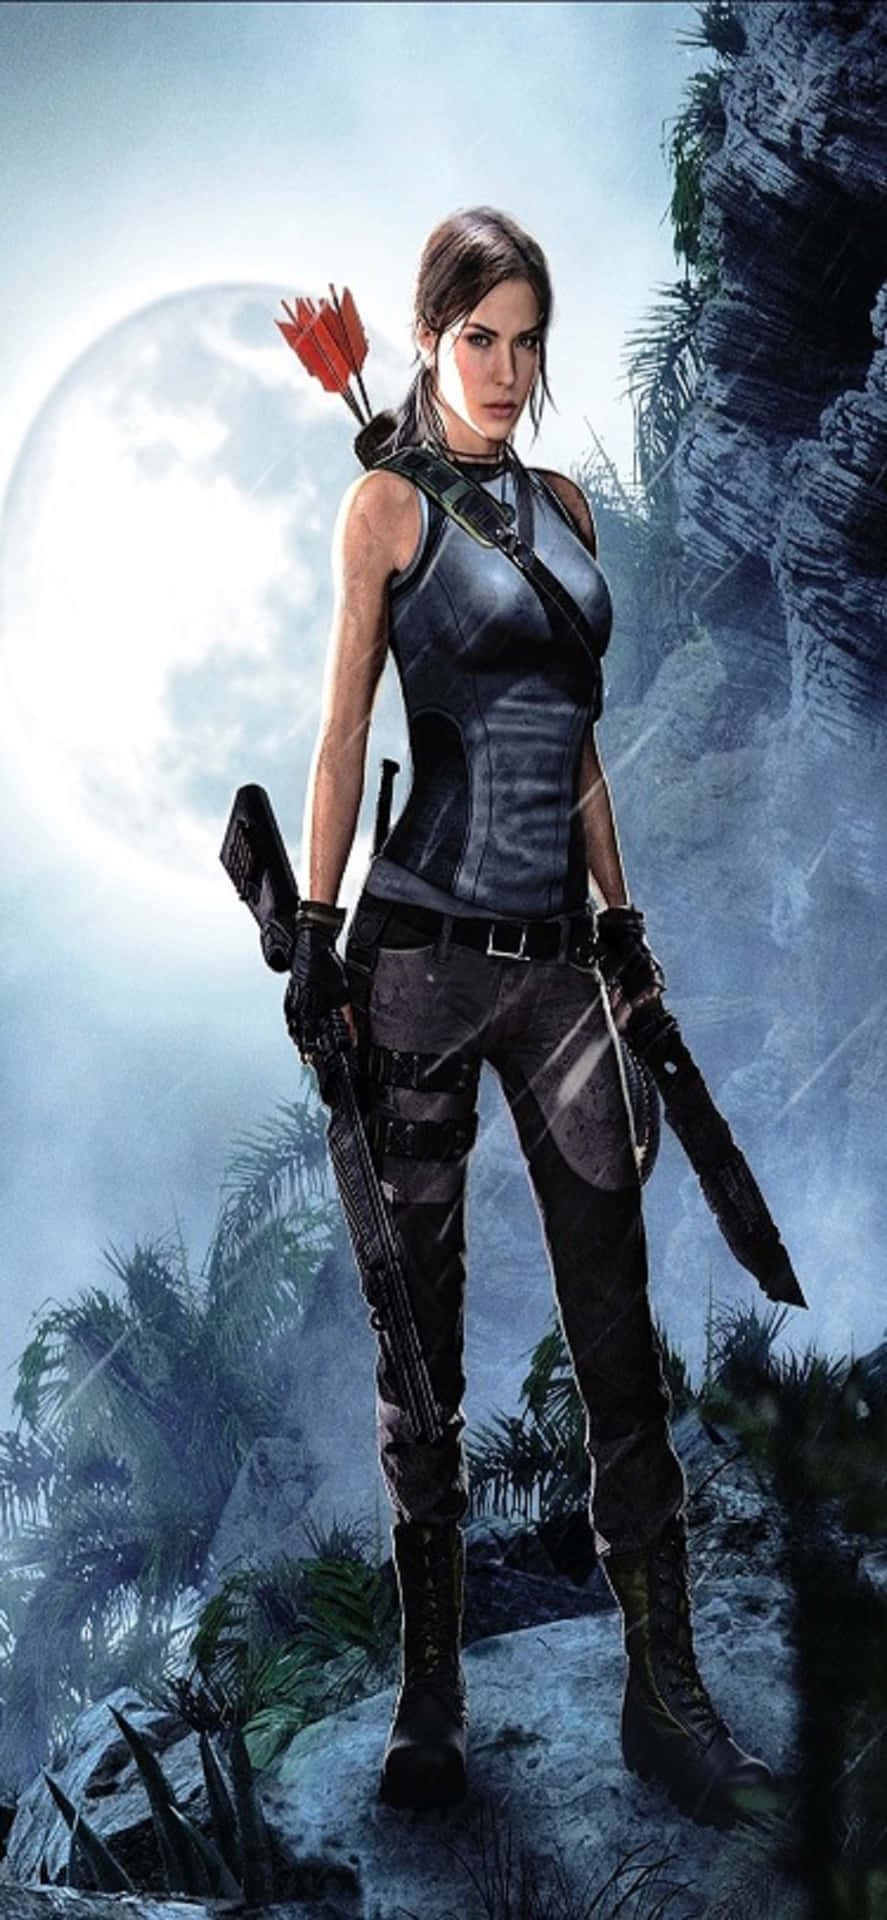 Desbloqueasecretos Y Explora La Nueva Aventura De Lara Croft En El Iphone X Shadow Of The Tomb Raider.